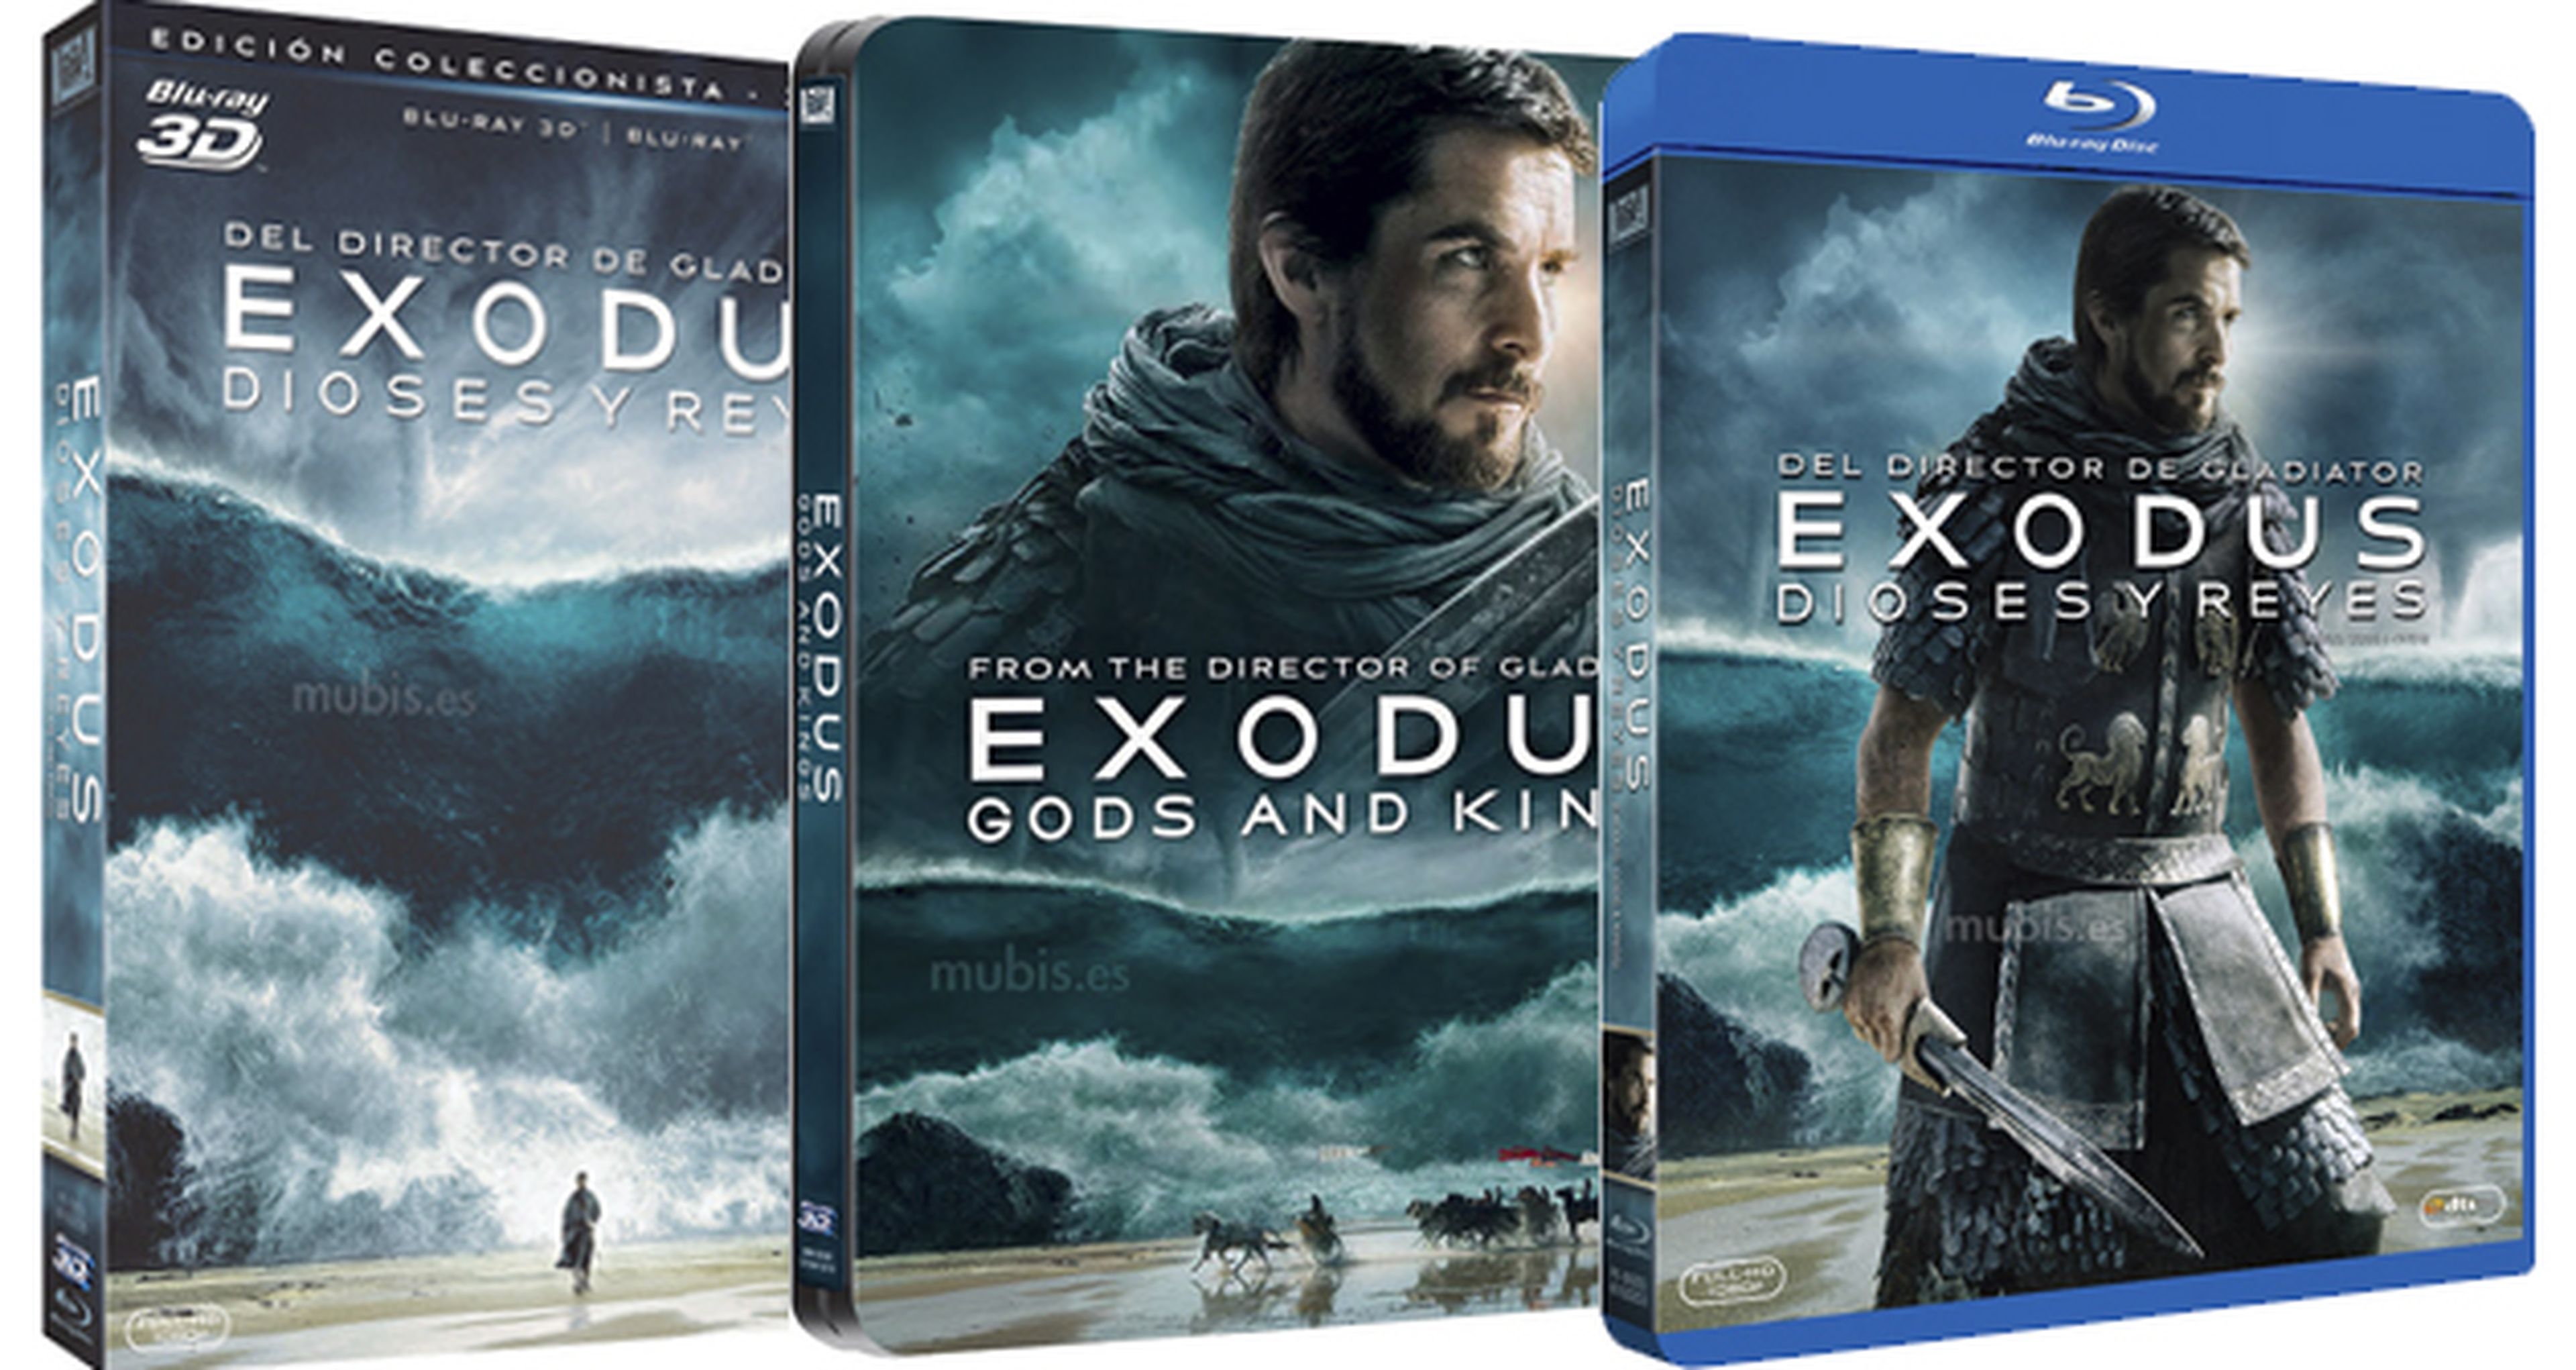 Exodus estrena Blu-Ray, BR 3D y edición especial con contenidos extra